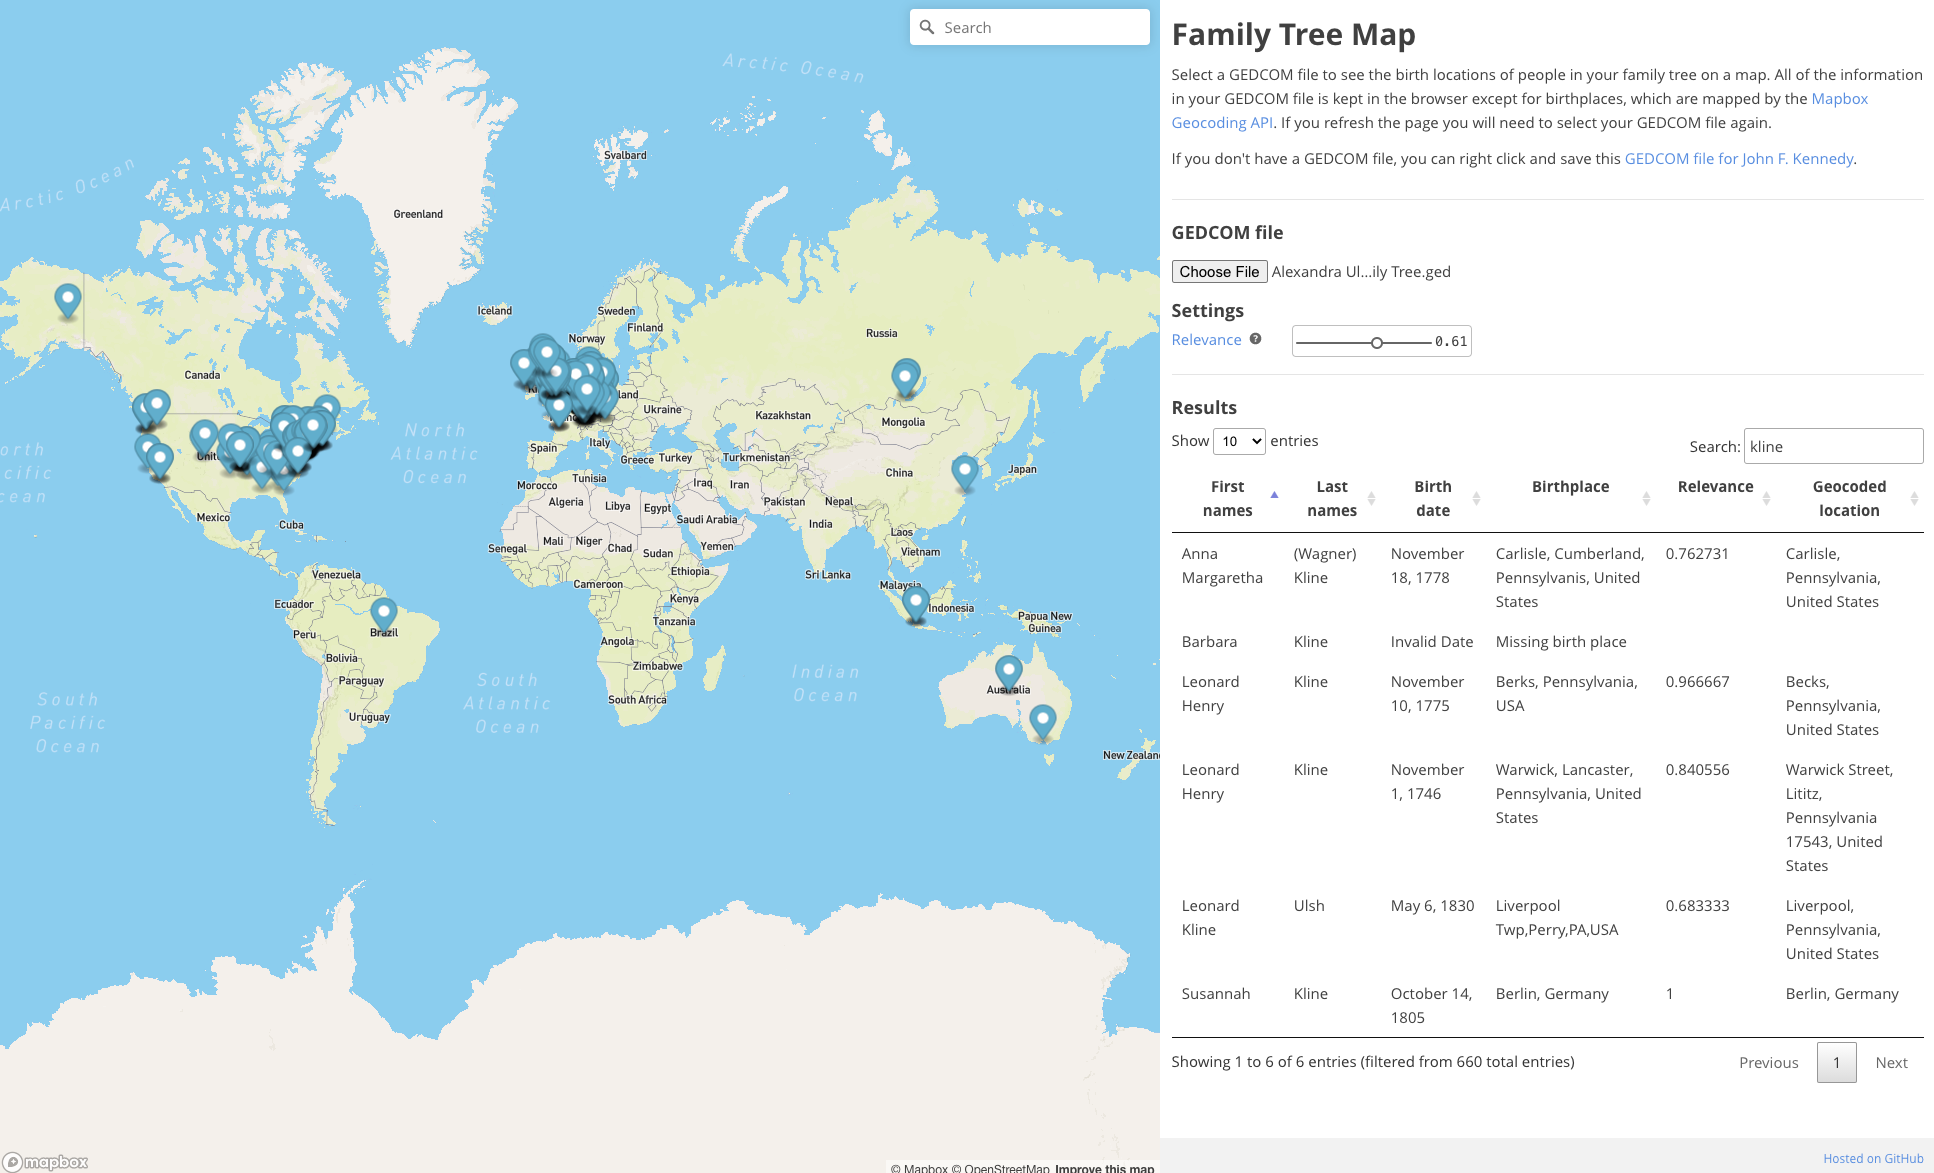 Family tree map